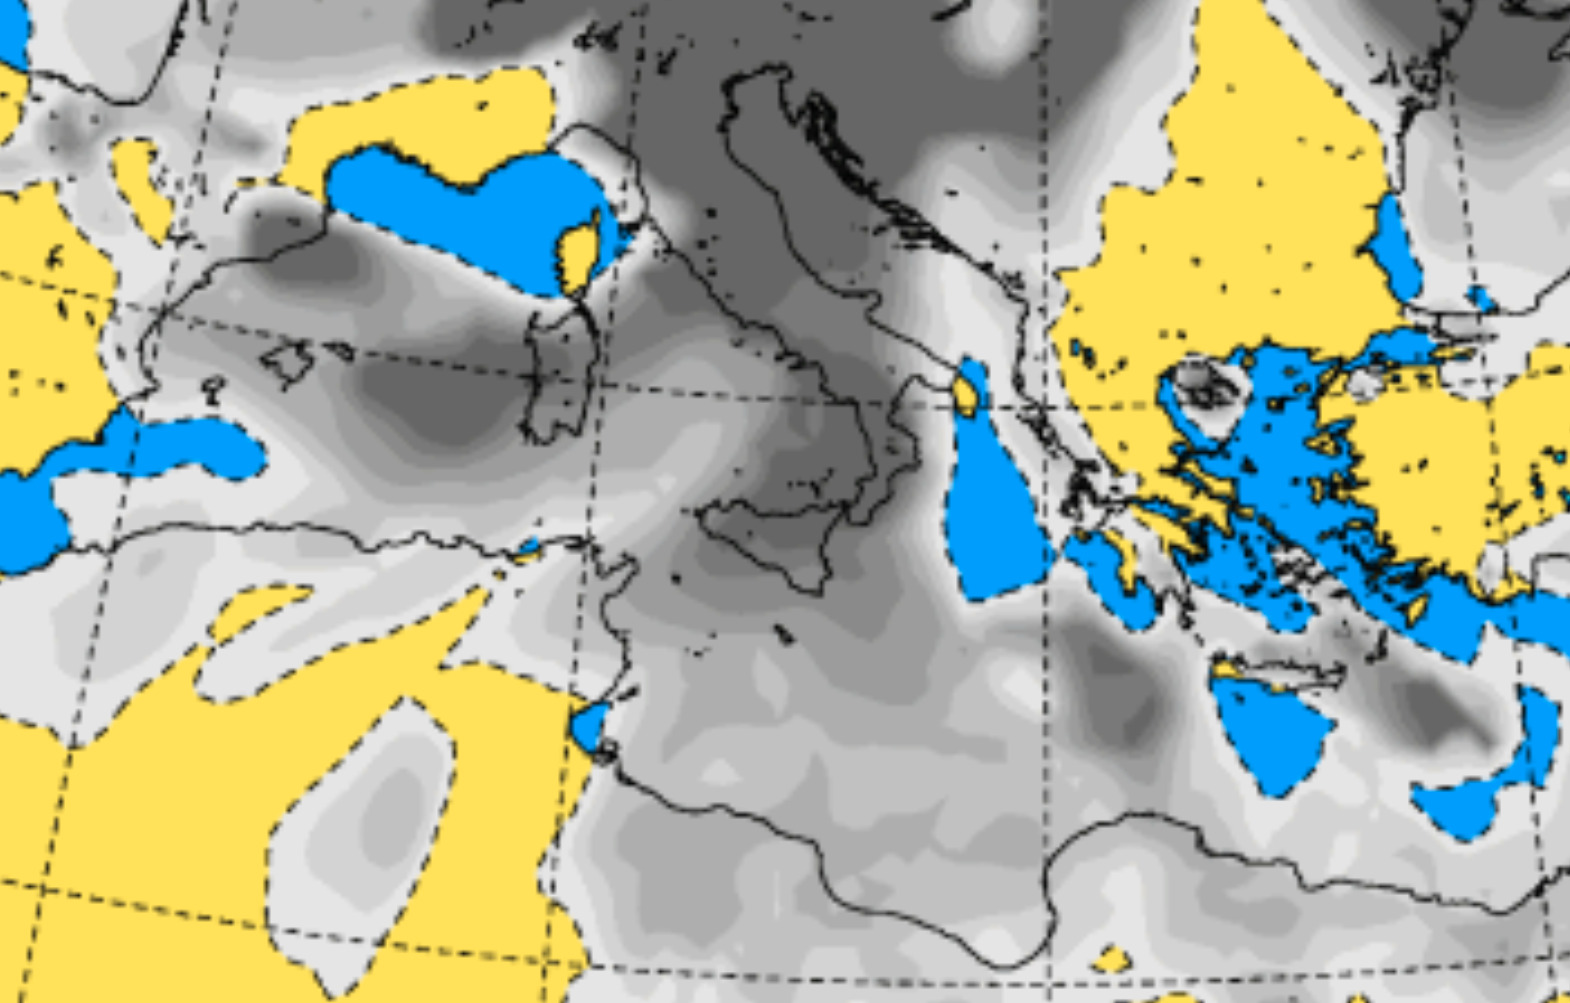 Meteo Sicilia, dopo giorni bel tempo tornano i temporali: emanata allerta gialla